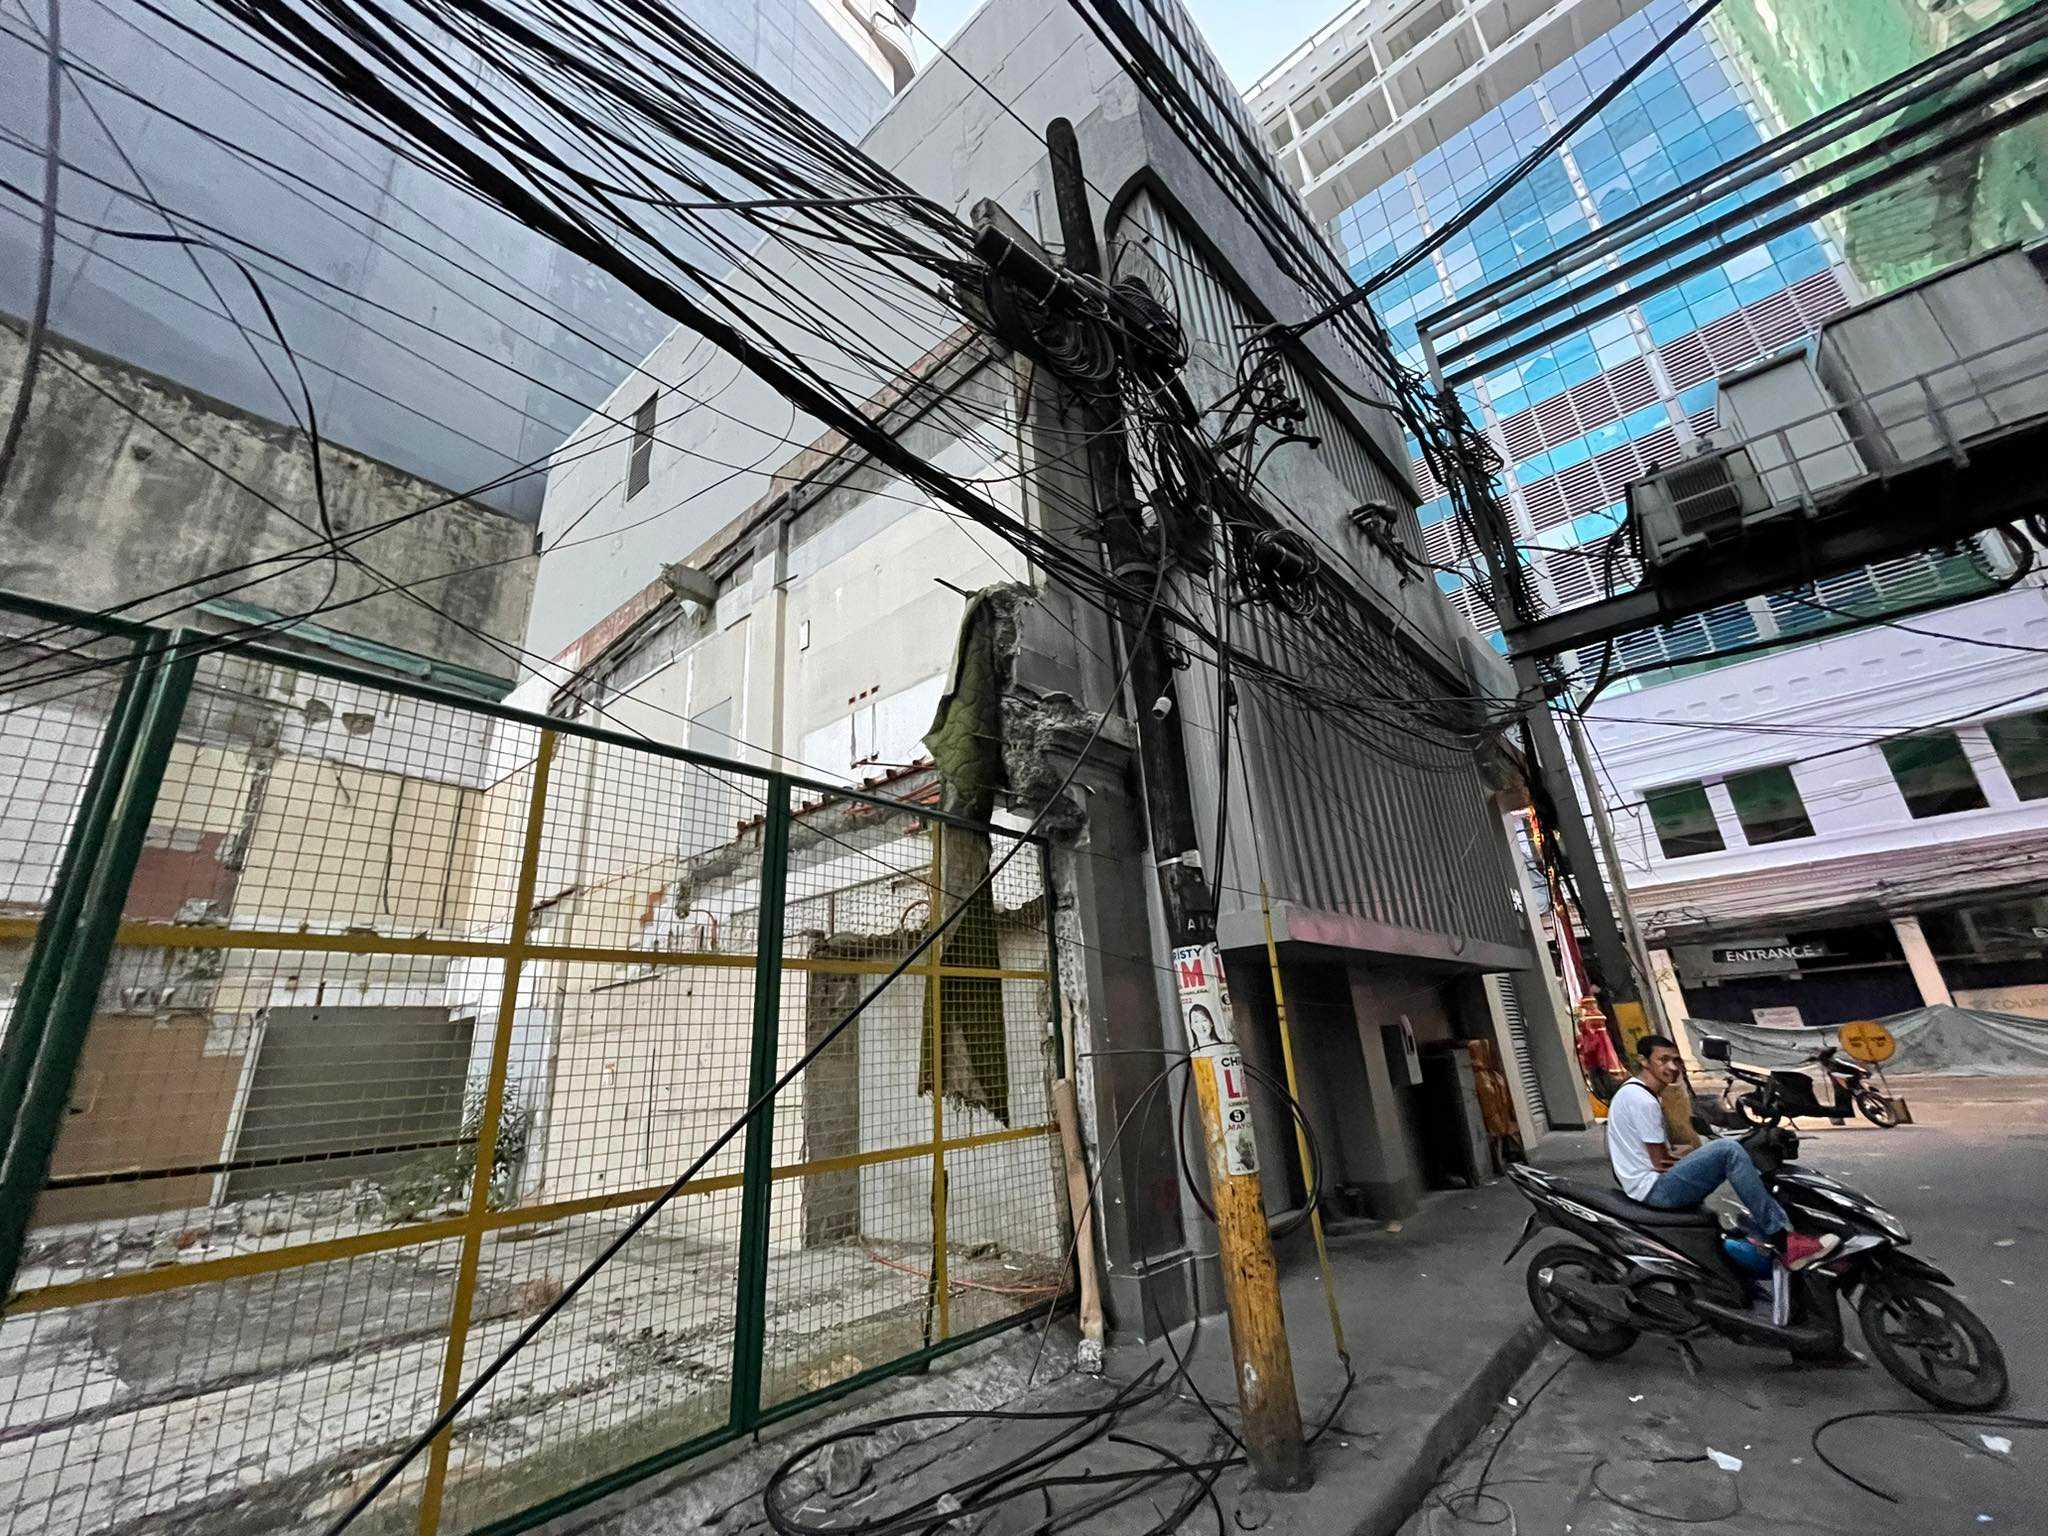 Electrical post fell down in Binondo, Manila